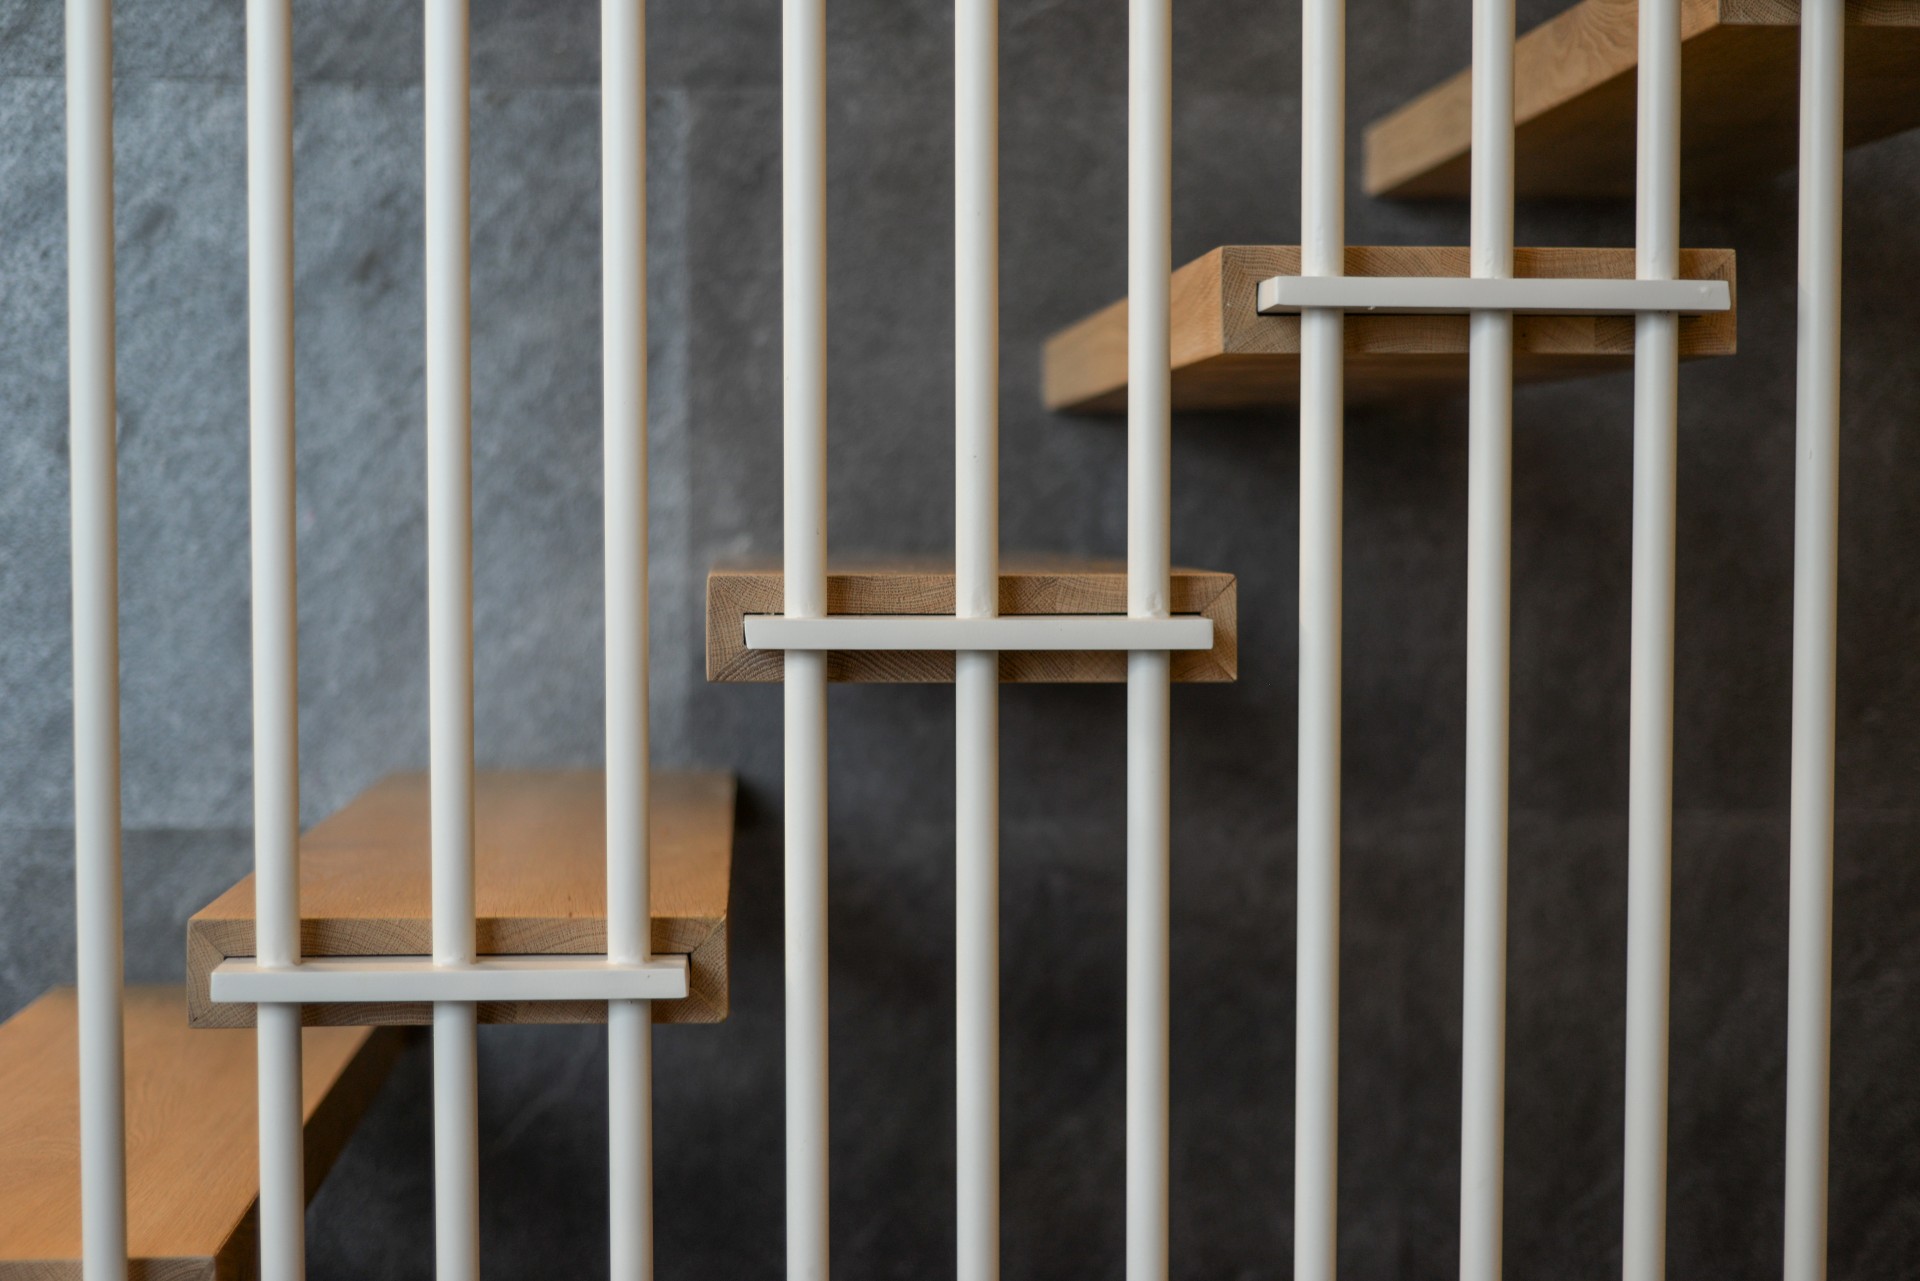 מדרגות ברזל לבן עטופות בעץ אלון משולבות במדרגות עץ מרחפות לצד מעקה ברזל לבן עם ידית מעץ ומעקות זכוכית